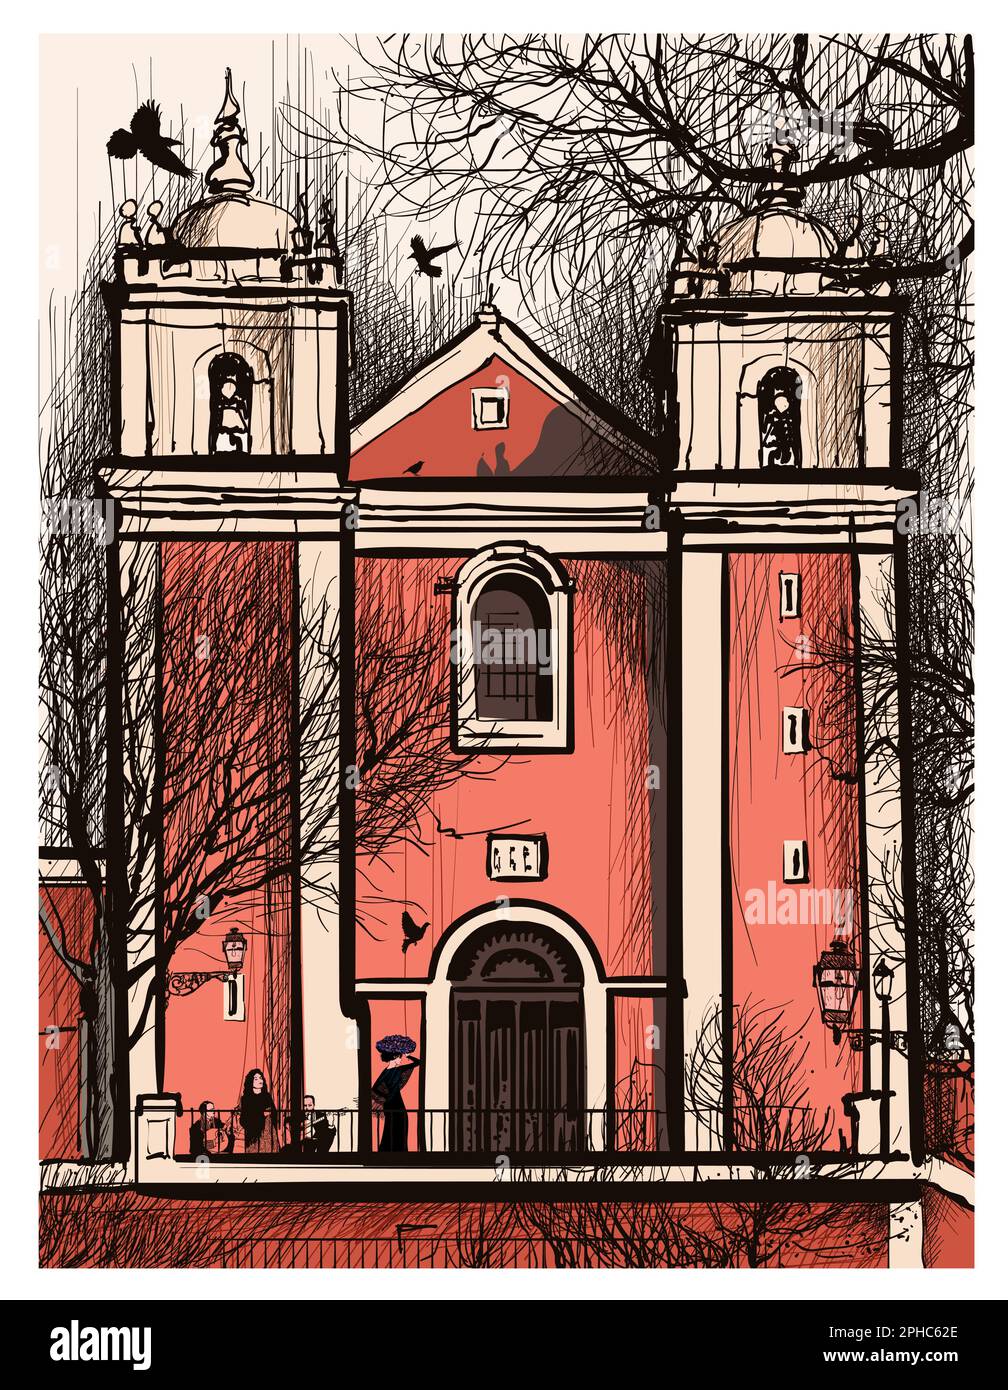 Rappresentazione originale e colorata della Chiesa Santos-o-Velho, a Lisbona, Portogallo - illustrazione vettoriale (ideale per la stampa, poster o carta da parati, hou Illustrazione Vettoriale